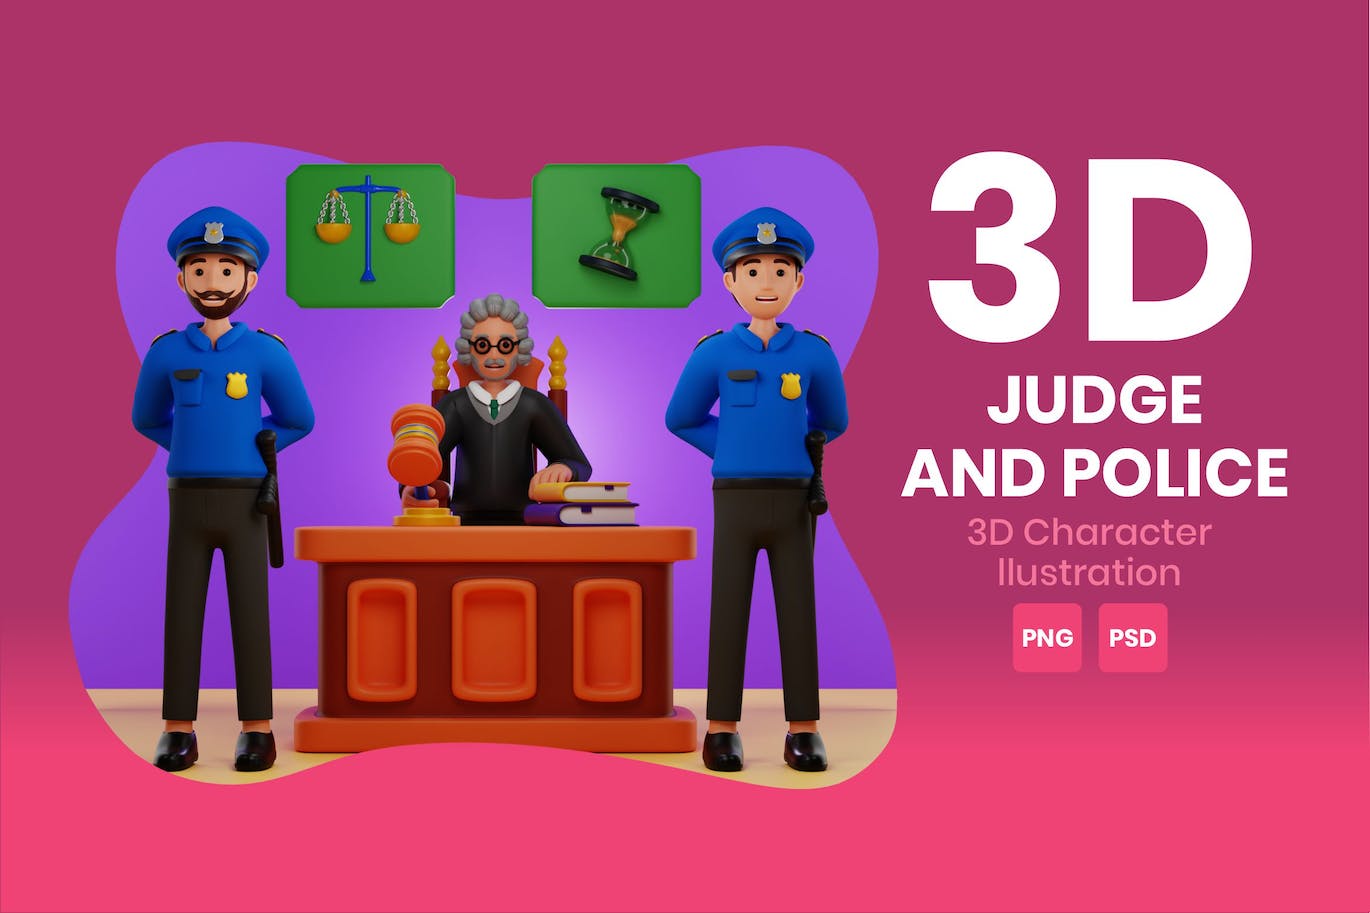 法官和警察3D角色插画素材 Judge And Police 3D Character Illustration 图片素材 第1张